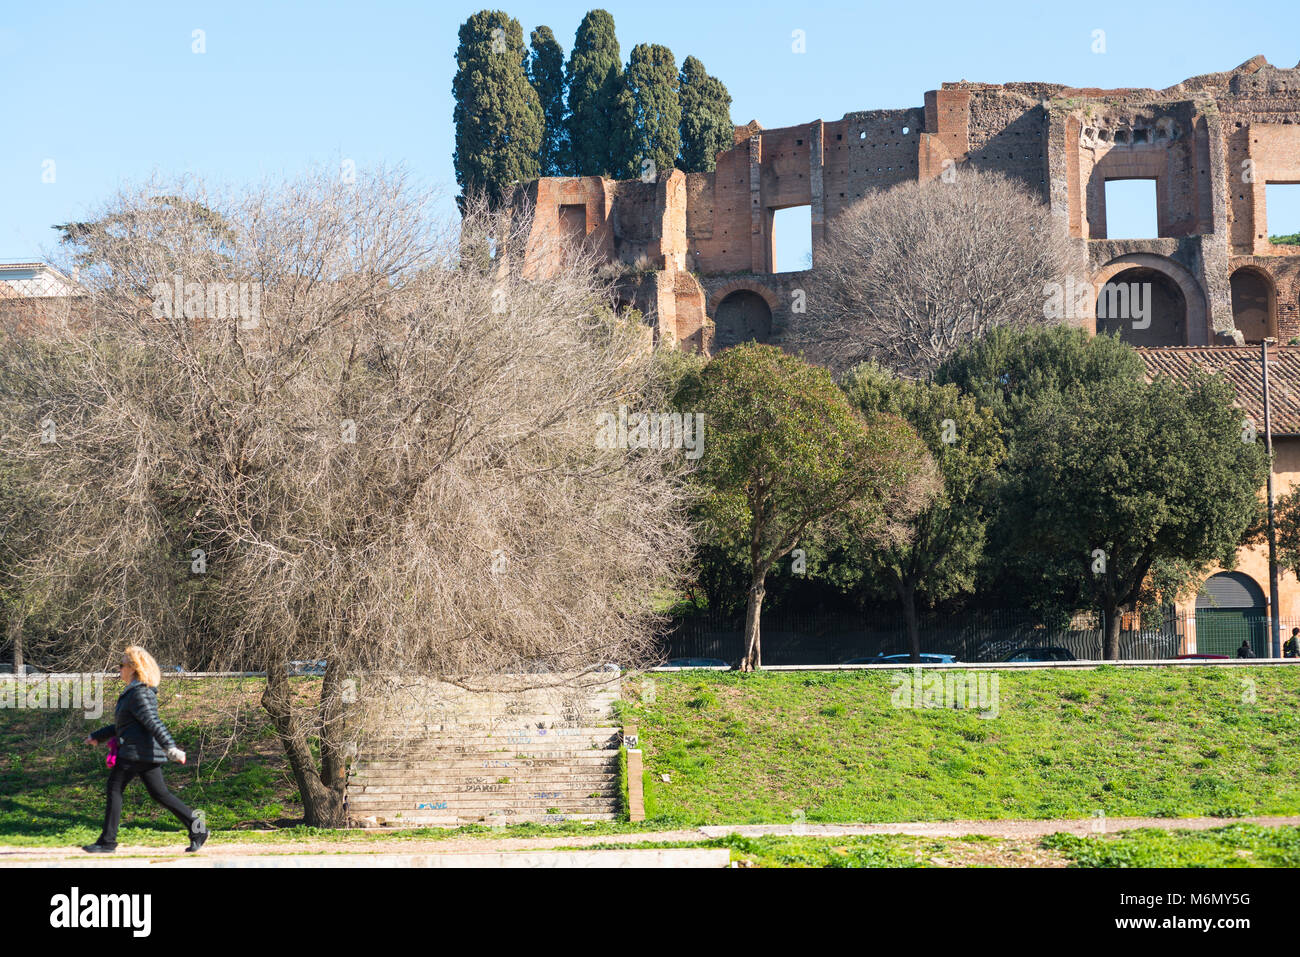 Rovine della Domus Augustana palazzo sul Palatino visto dal Circo Massimo, Roma, lazio, Italy. Foto Stock